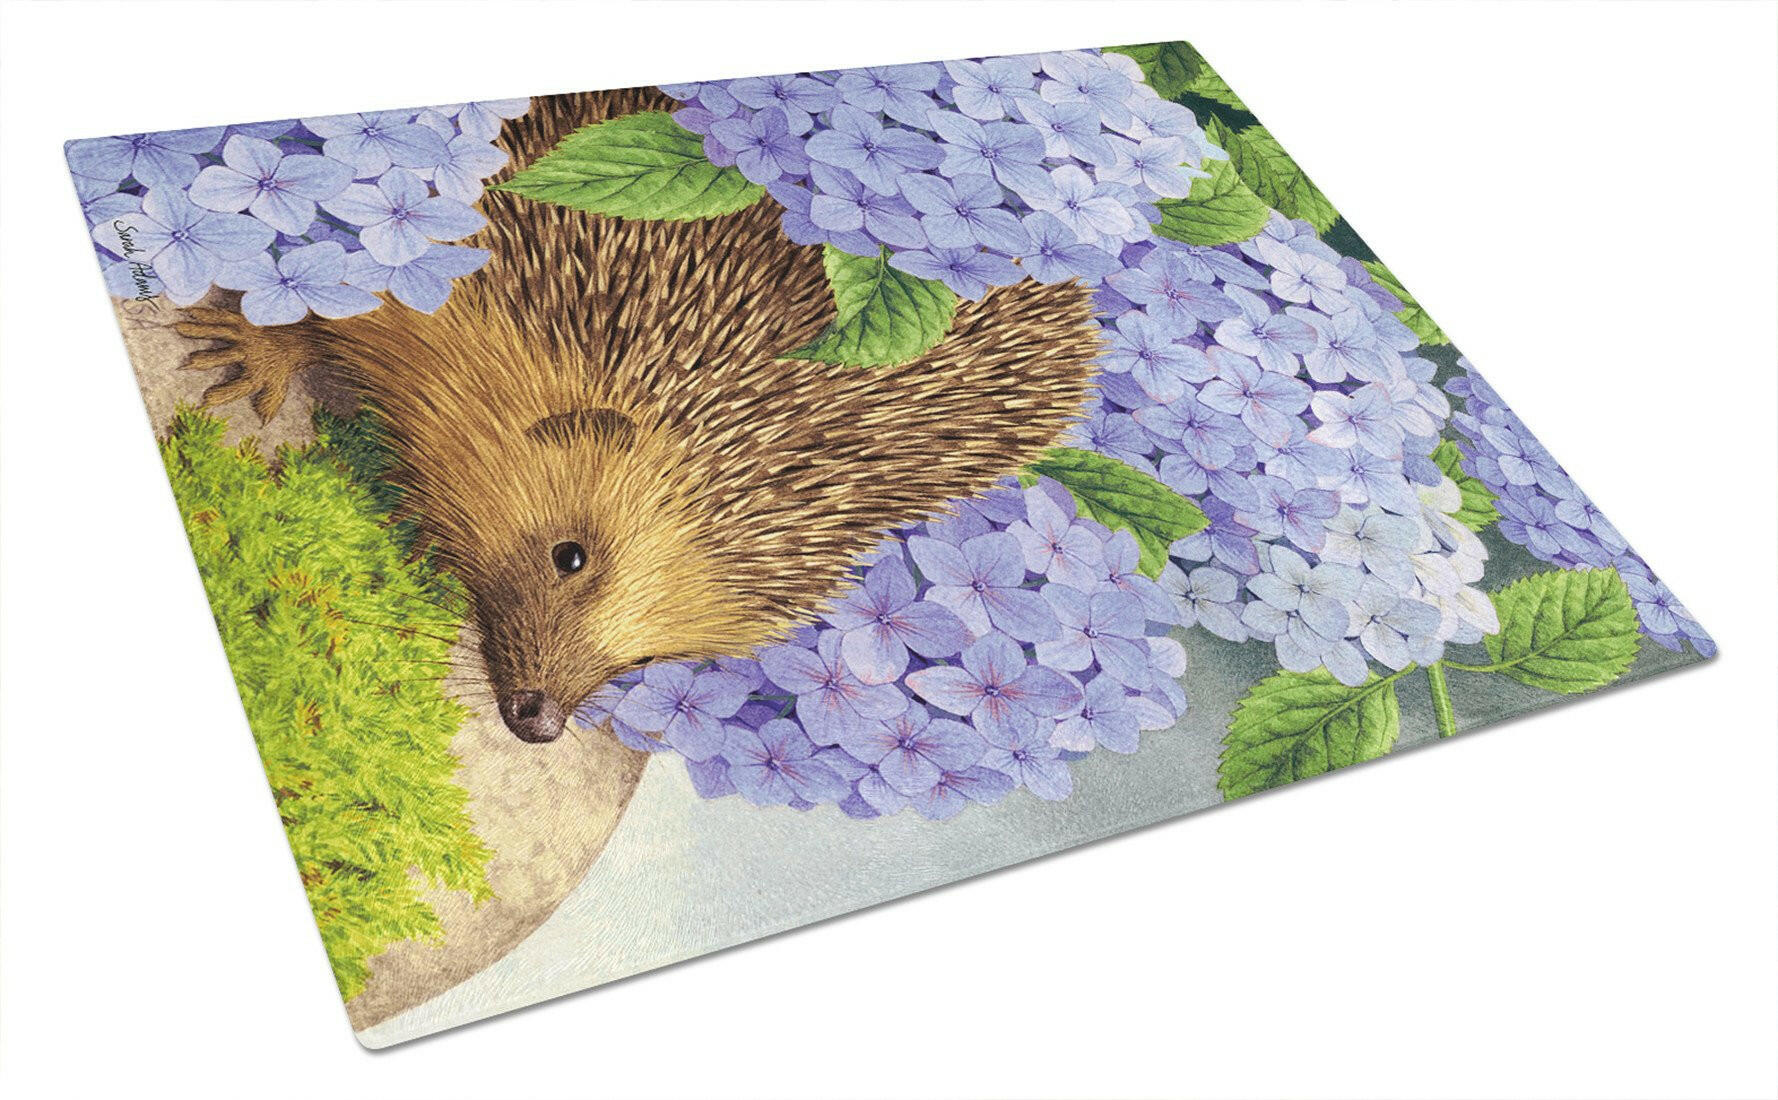 Hedgehog & Hydrangea Glass Cutting Board Large ASA2001LCB by Caroline's Treasures